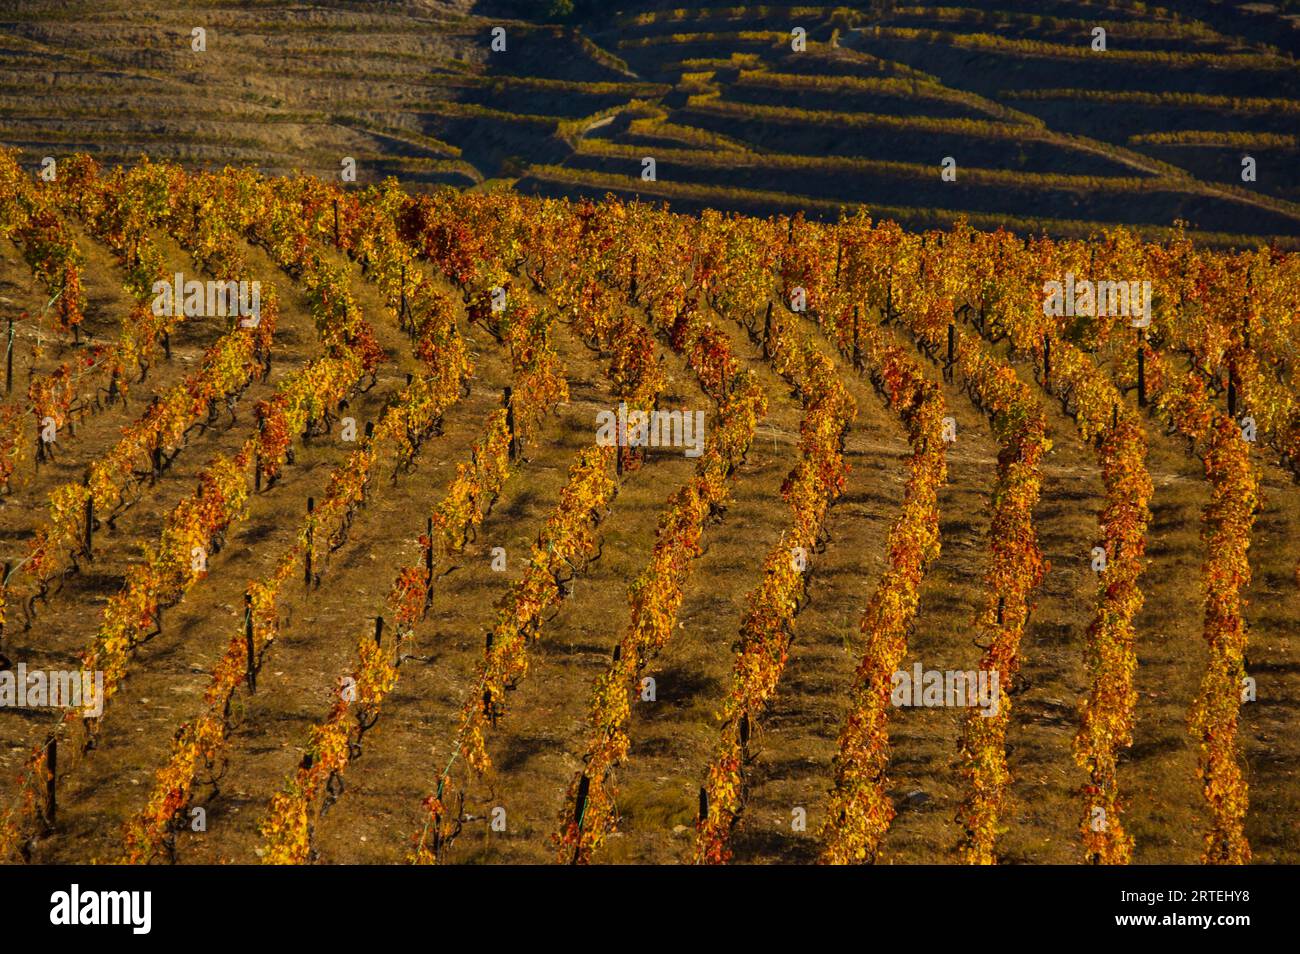 Vignoble aux couleurs d'automne, près de Chanceleiros dans la vallée du fleuve Douro au Portugal ; vallée du fleuve Douro, Portugal Banque D'Images